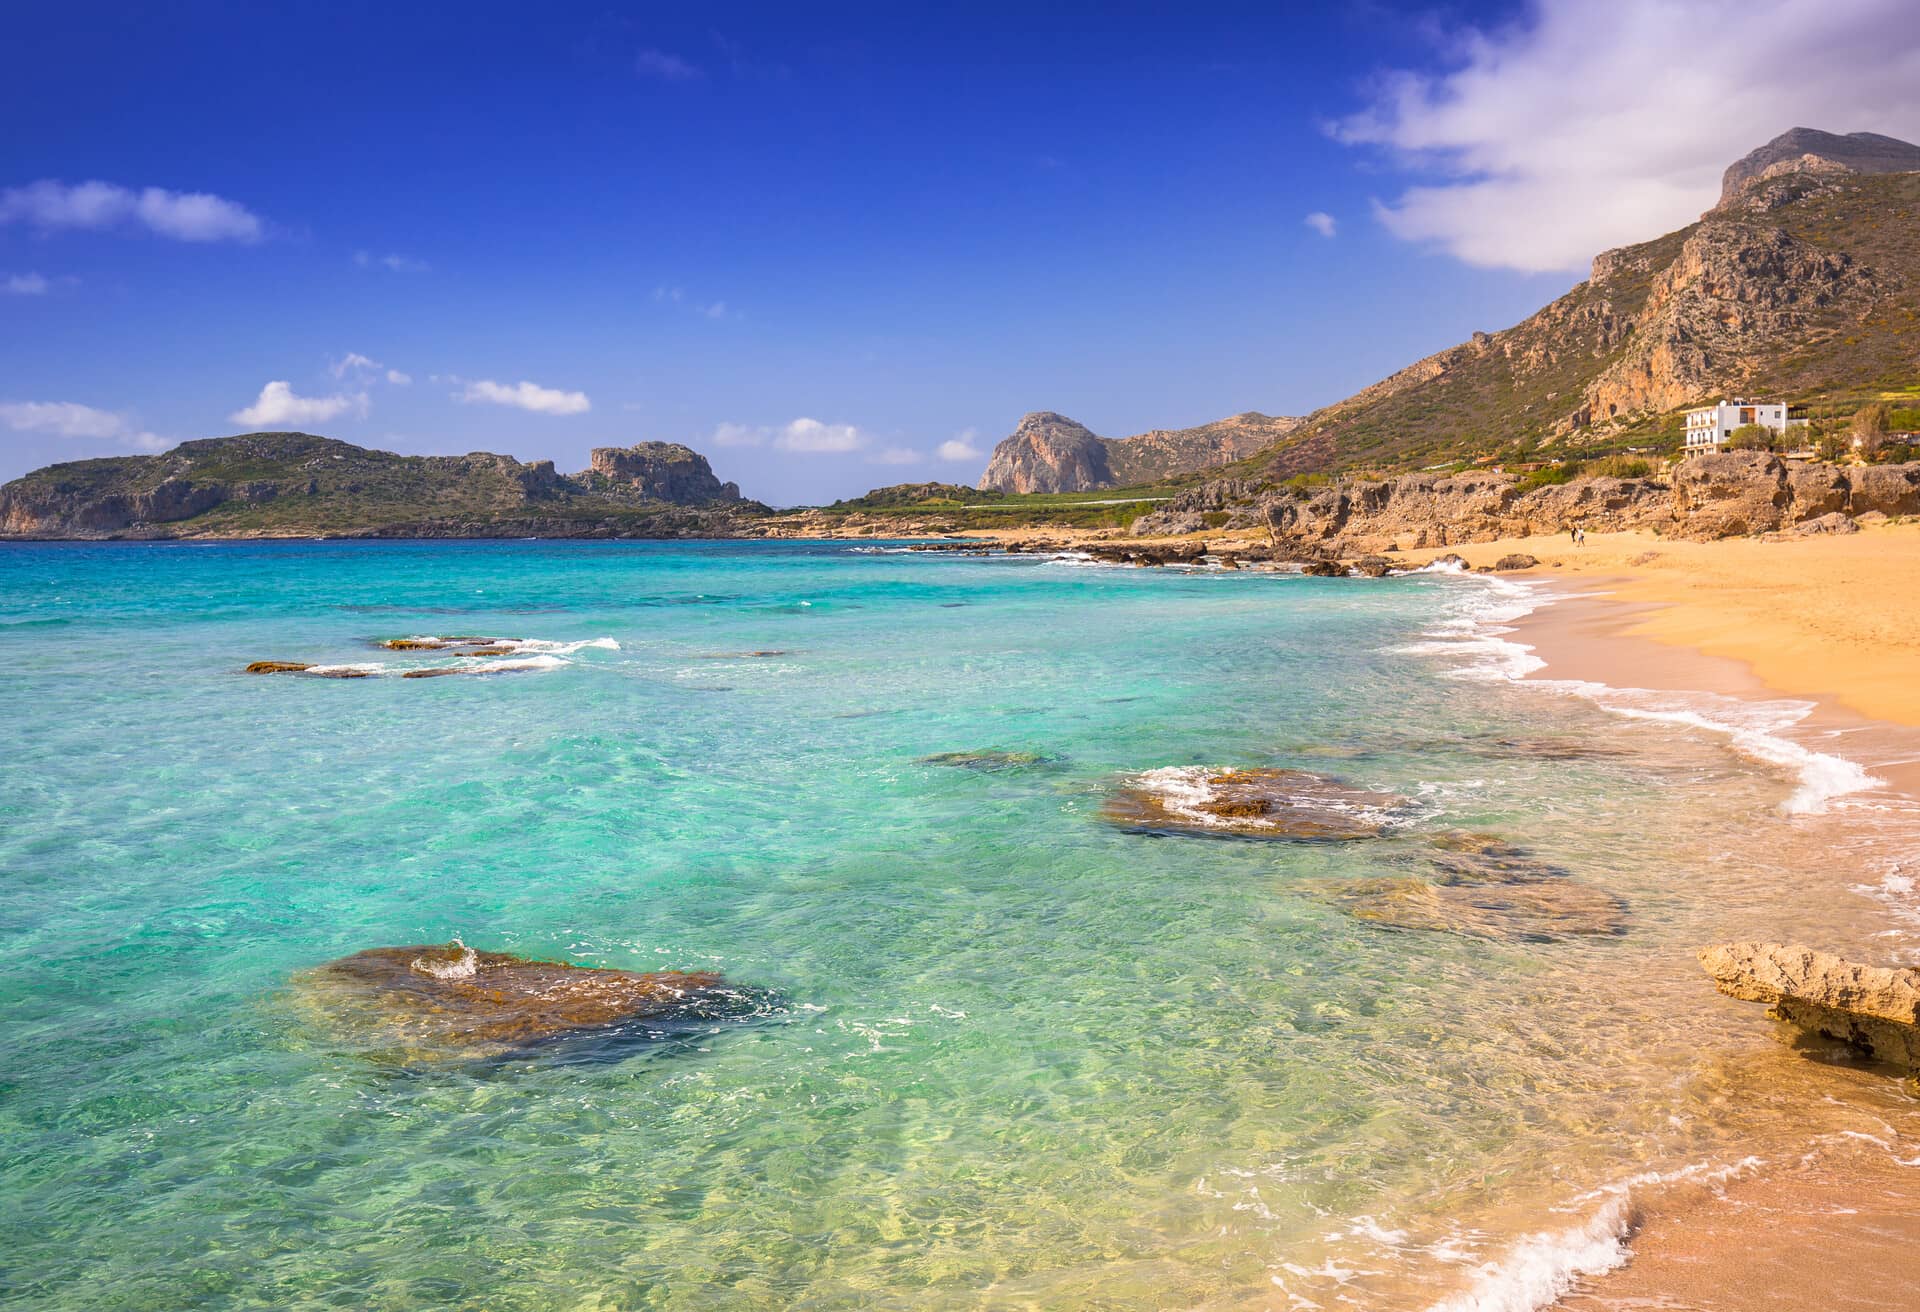 Η Κρήτη είναι το καλύτερο νησί για διακοπές στην παραλία.